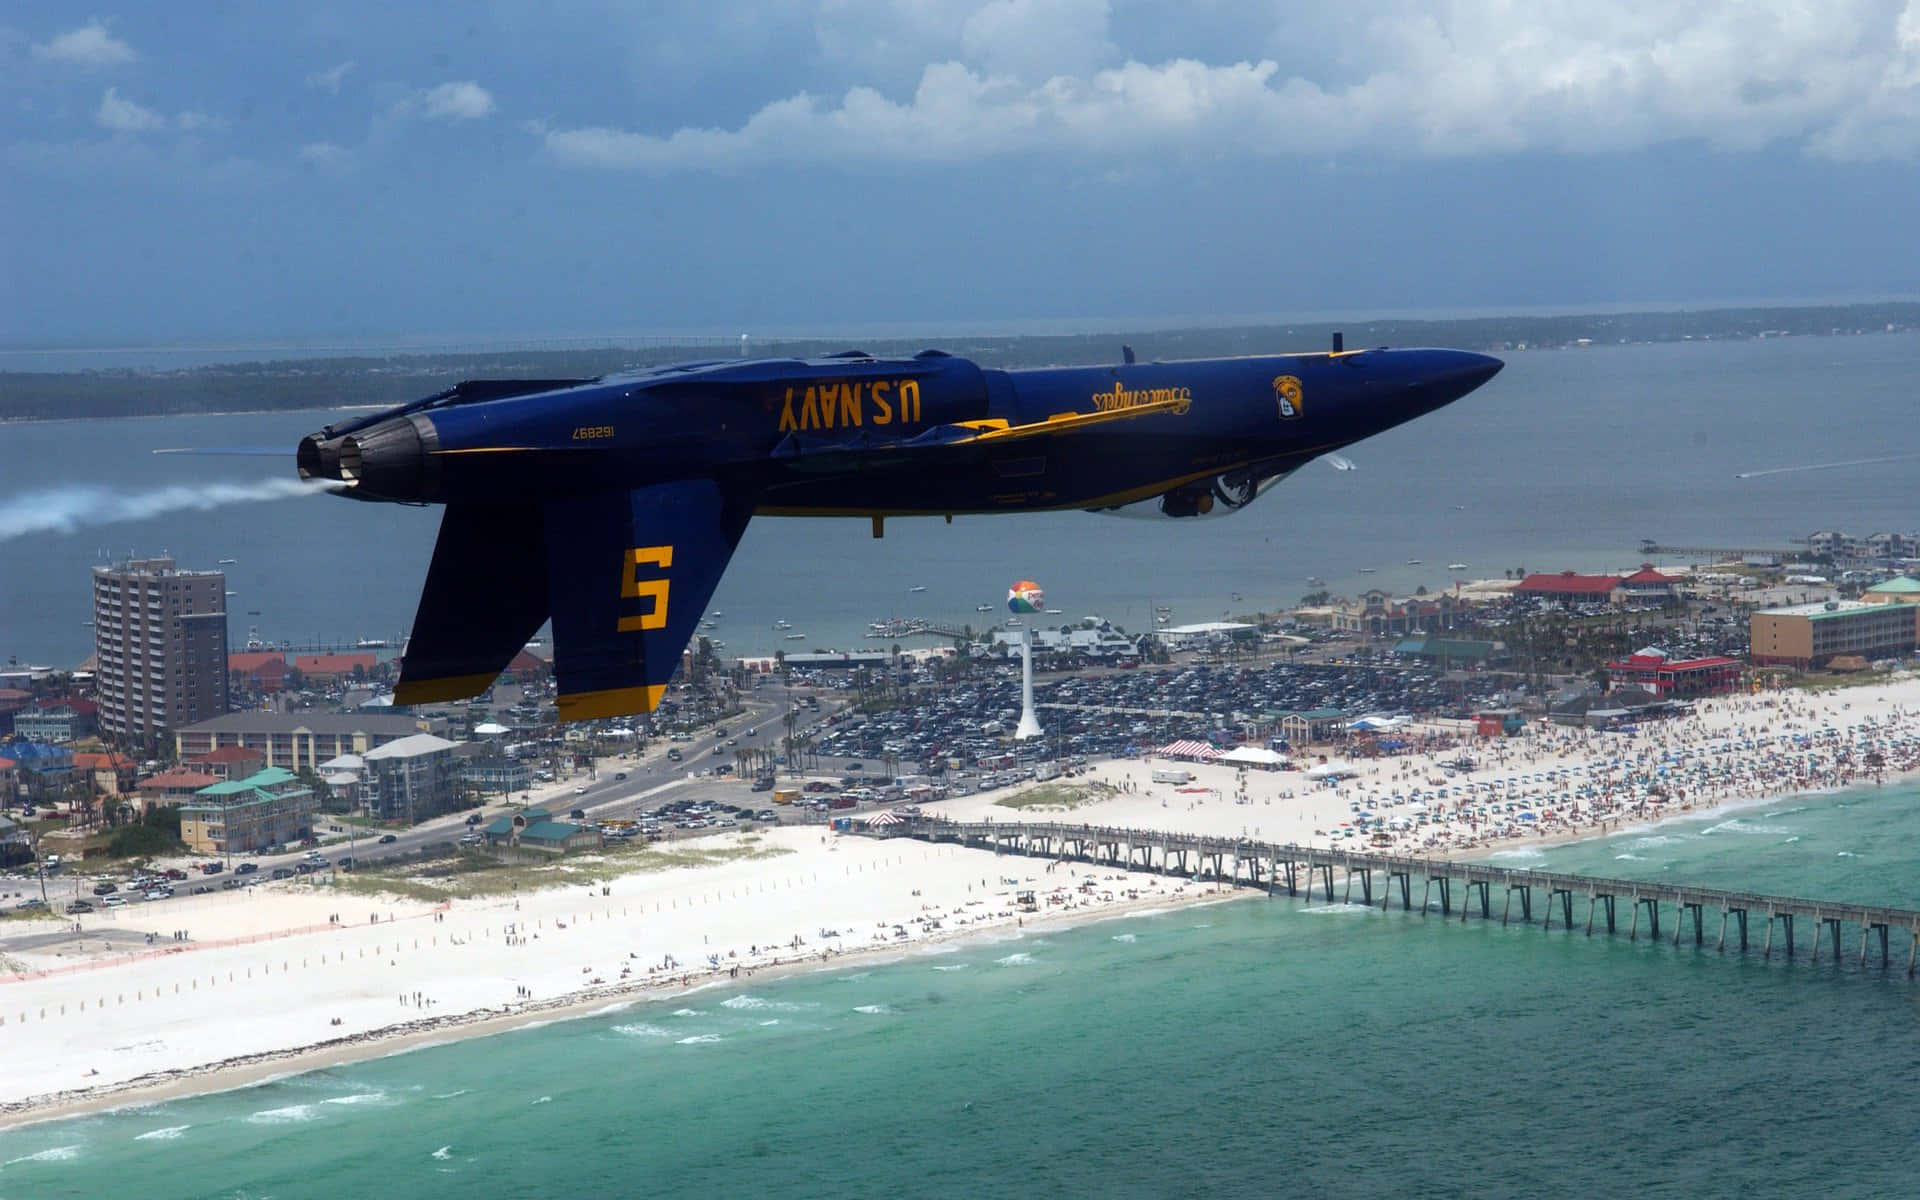 Lospilotos De Combate De Los Blue Angels De La Marina De Los Estados Unidos Surcan El Cielo Alto. Fondo de pantalla